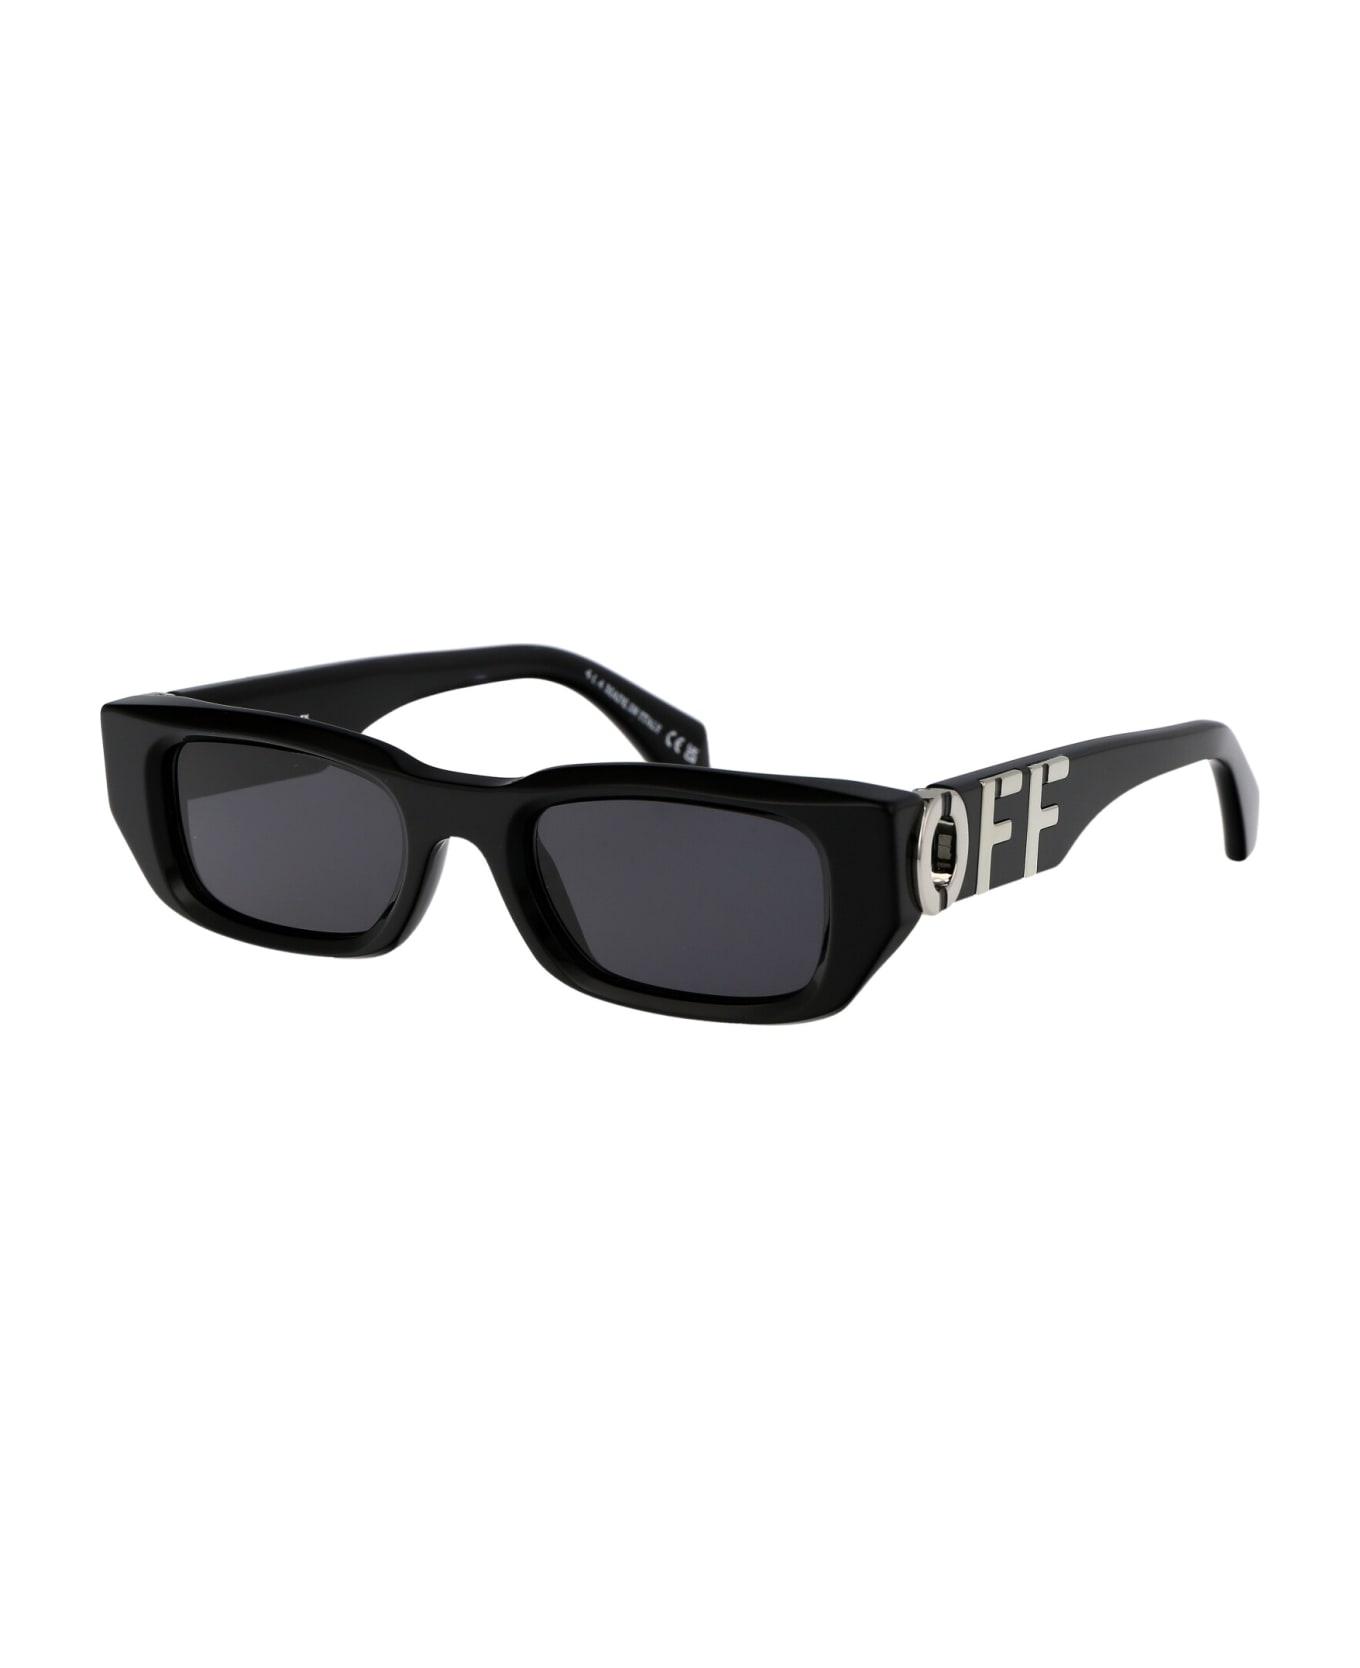 Off-White Fillmore Sunglasses - 1007 BLACK DARK GREY